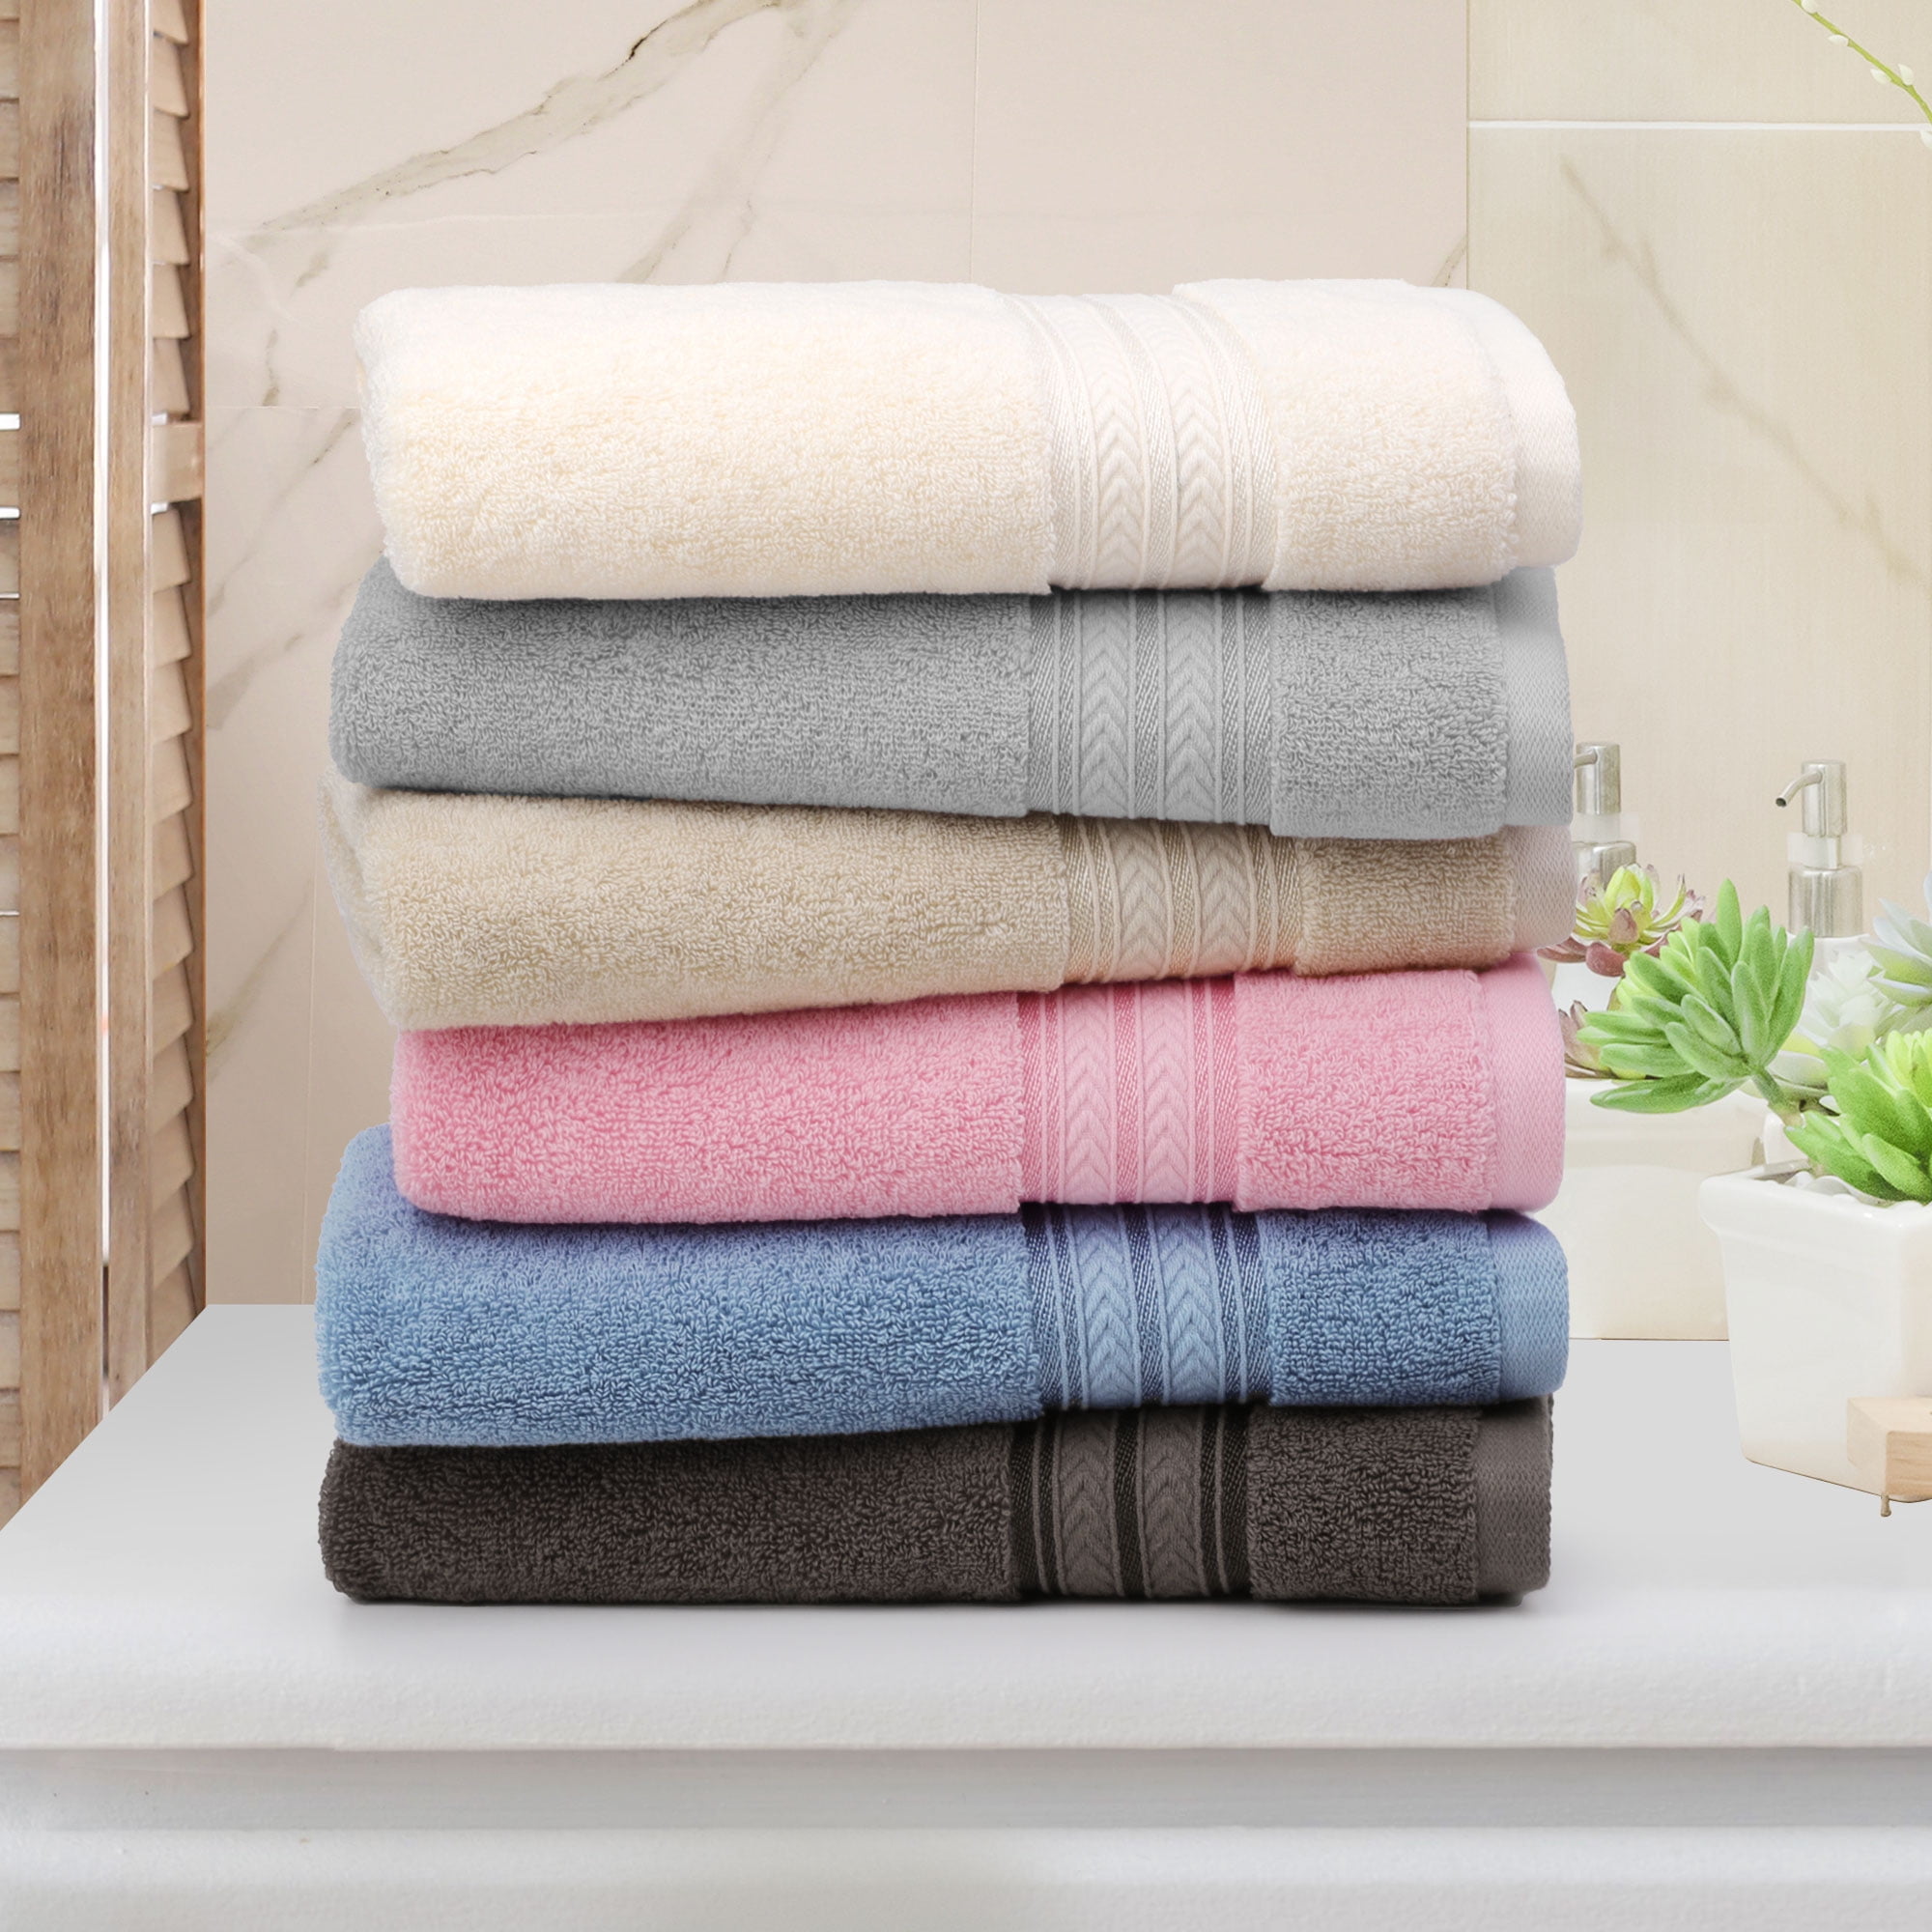 PiccoCasa 6PCS Cotton Soft Hand Towels Set for Bathroom 13